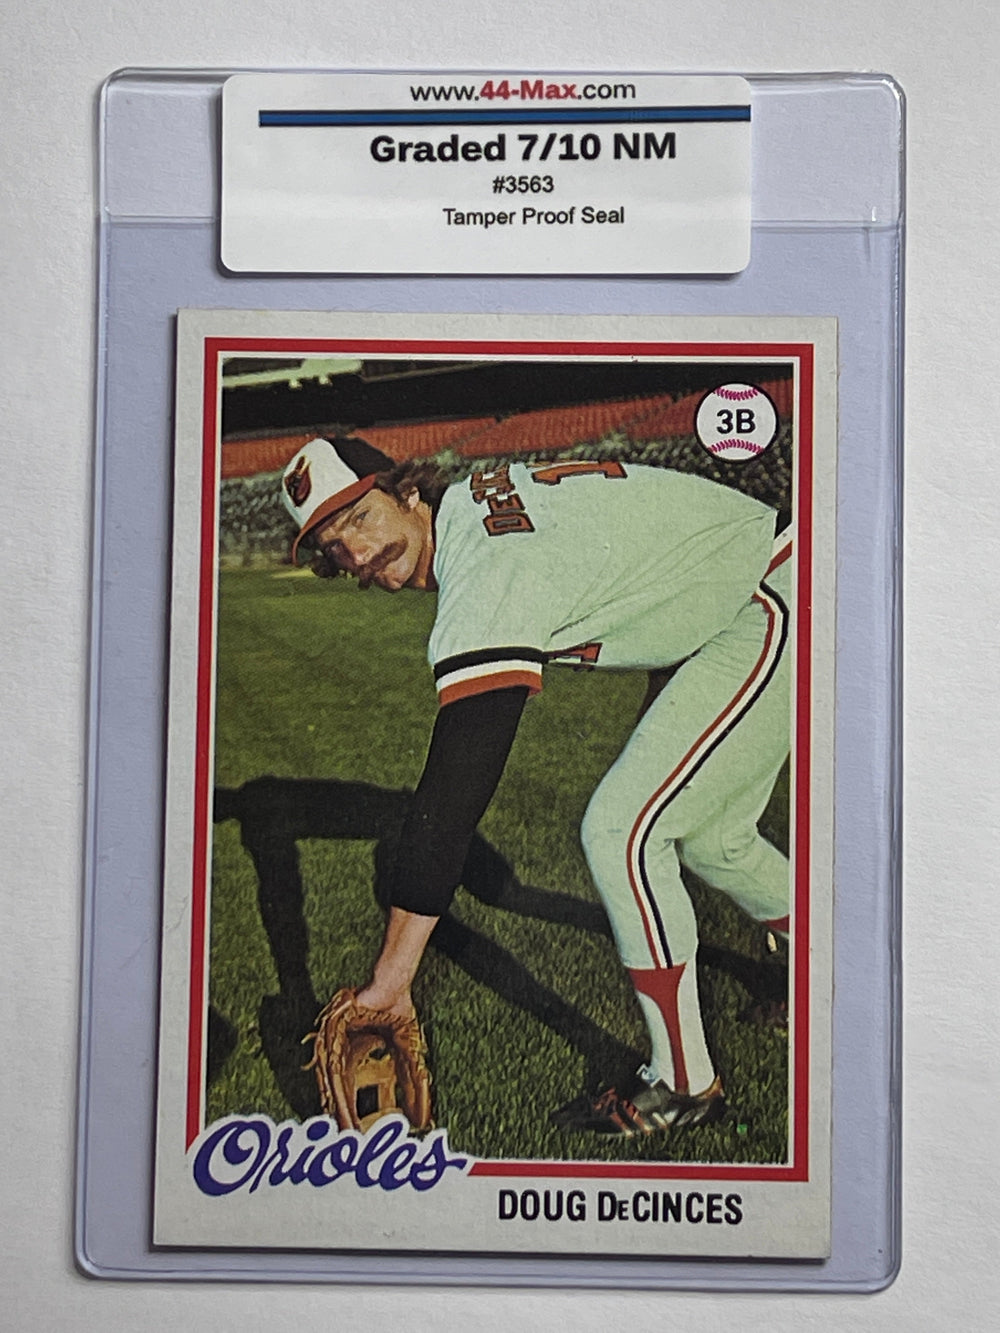 Doug DeCinces 1978 Topps Baseball Card. 44-Max 7/10 NM #3563